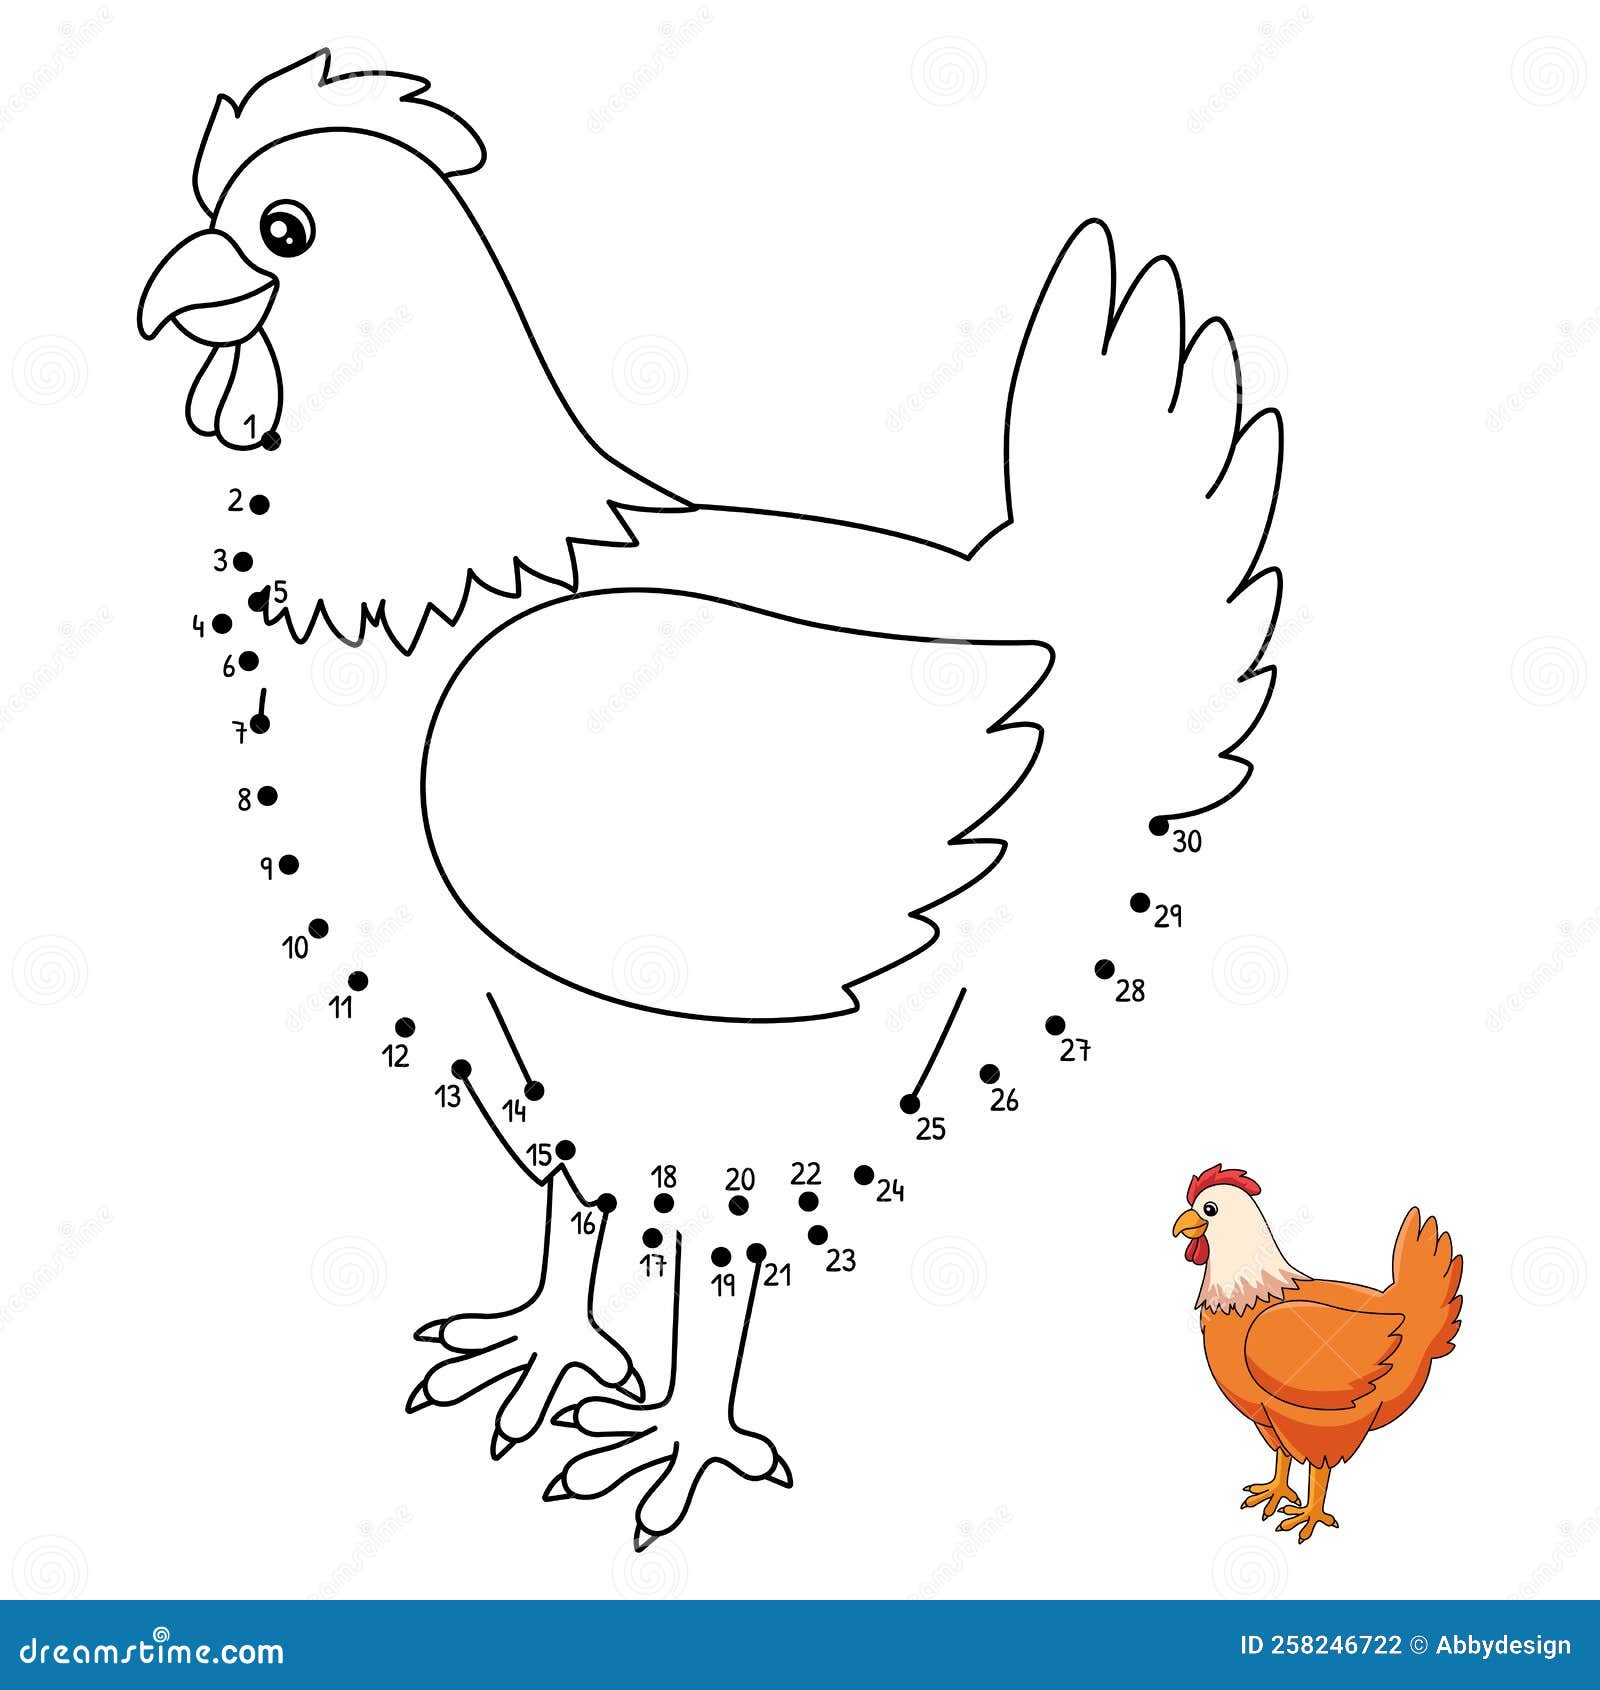 Páginas para colorir frangos para crianças